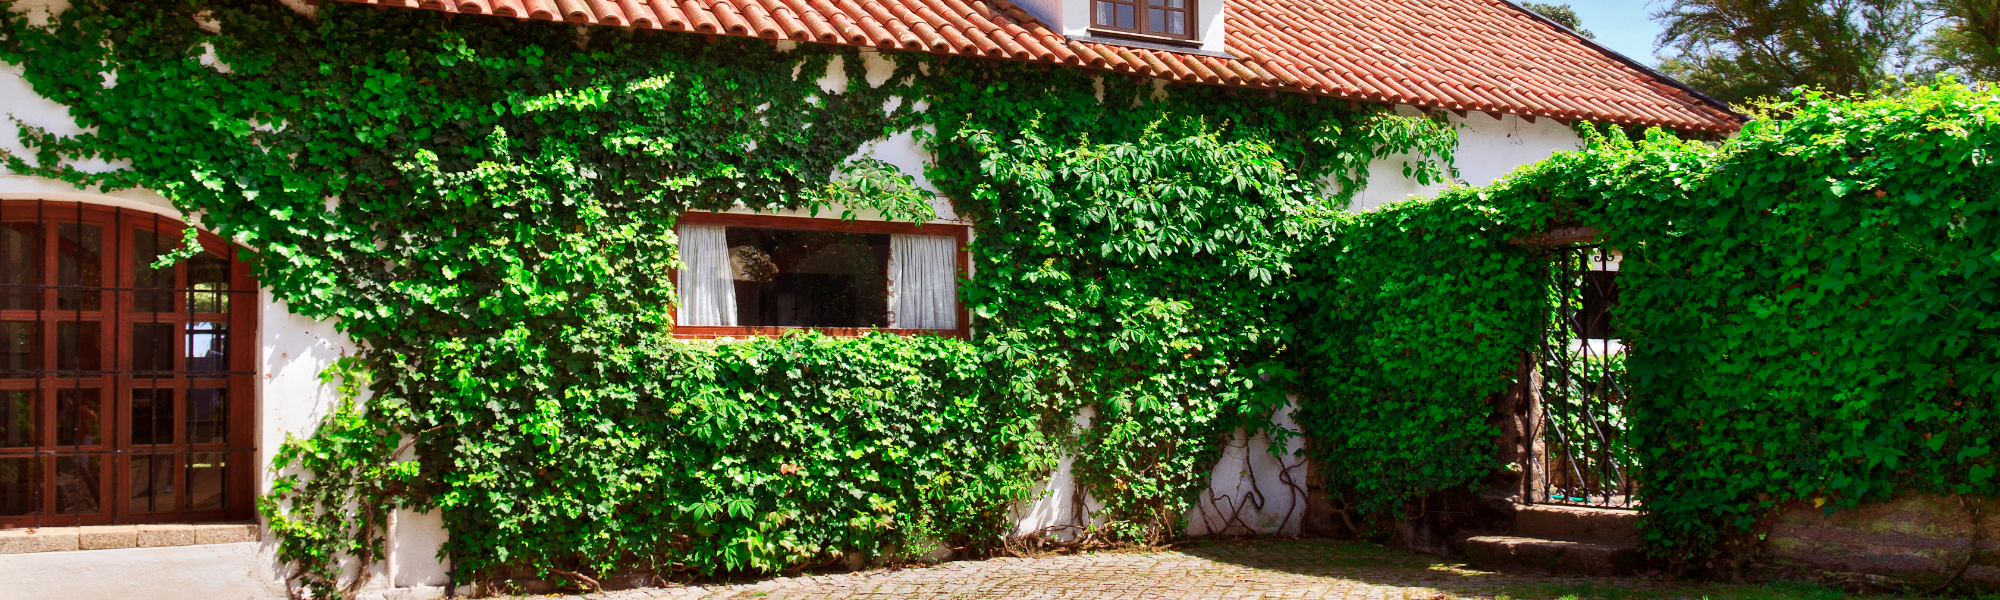 Pisos y casas en venta y alquiler en Azuaga. VENDESUR INMOBILIARIA DE LA CAMPIÑA SUR SLU en Azuaga